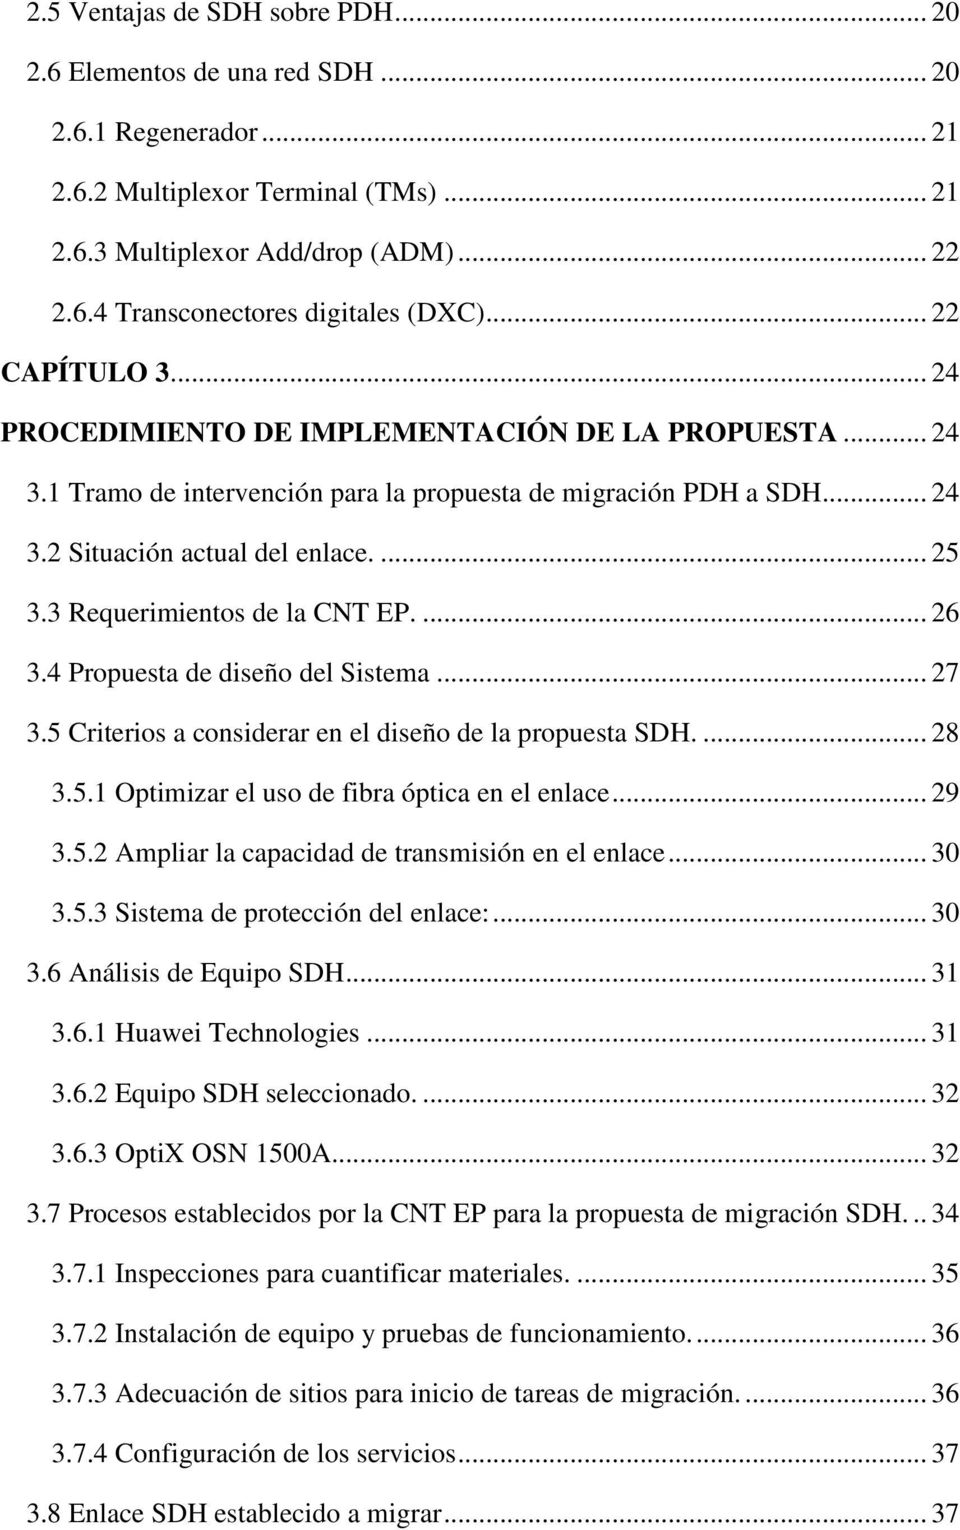 3 Requerimientos de la CNT EP.... 26 3.4 Propuesta de diseño del Sistema... 27 3.5 Criterios a considerar en el diseño de la propuesta SDH.... 28 3.5.1 Optimizar el uso de fibra óptica en el enlace.